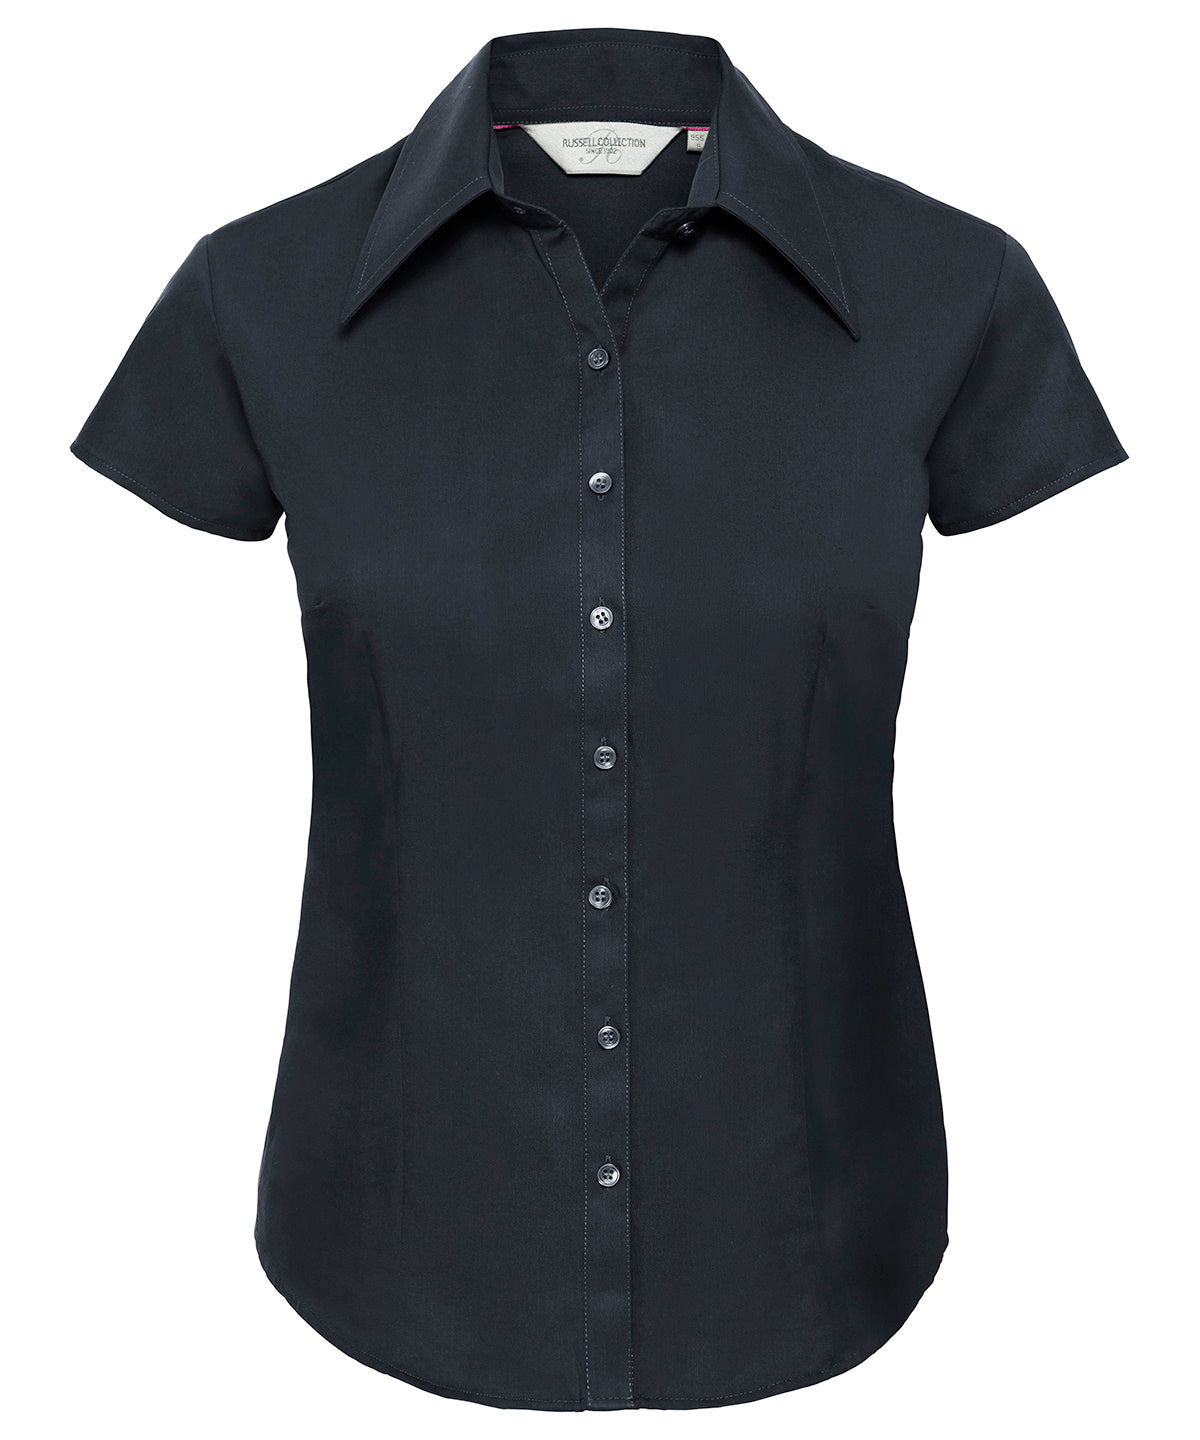 Bolir - Women’s Cap Sleeve Tencel® Fitted Shirt